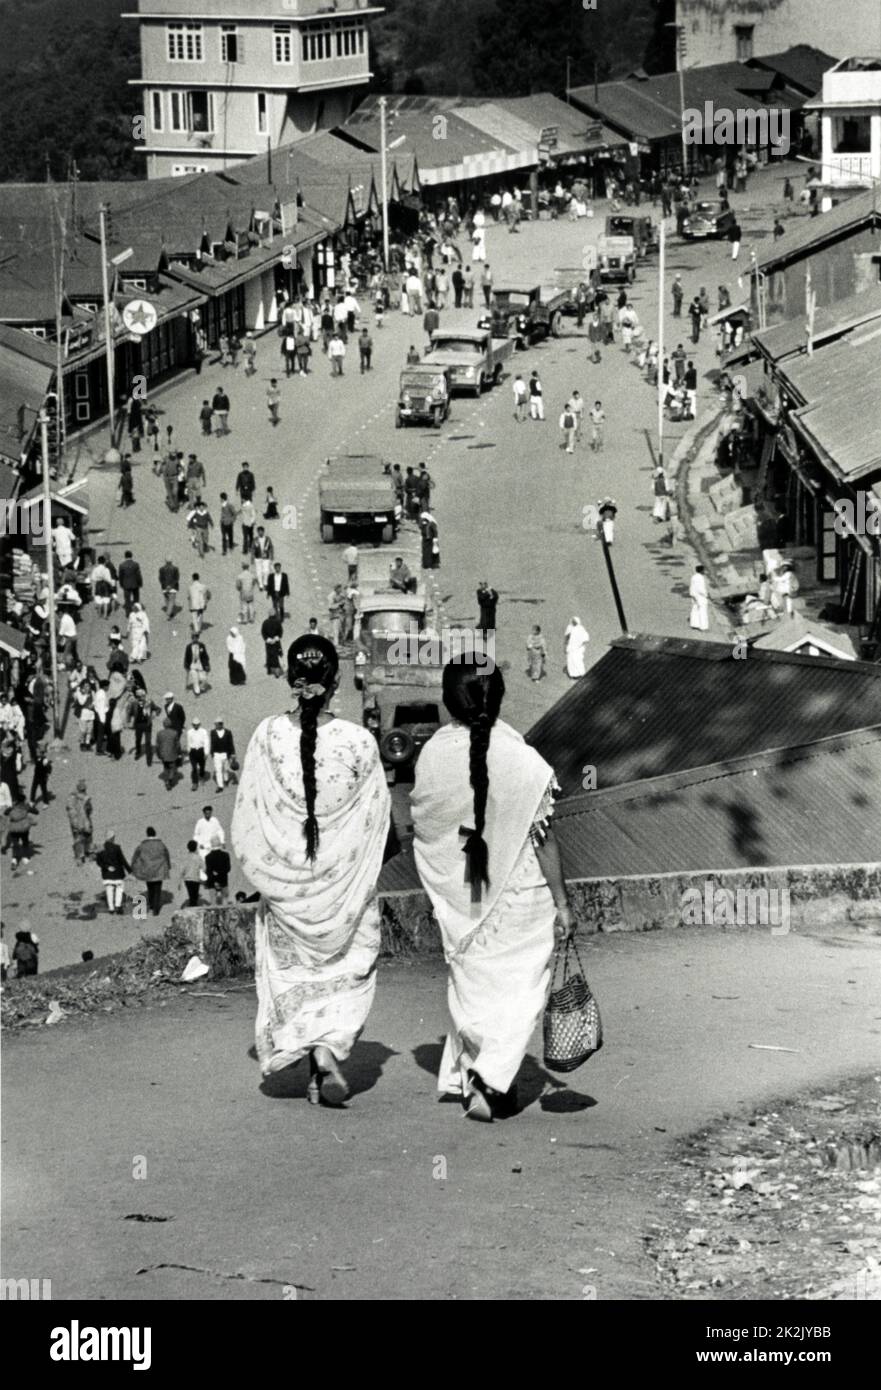 Blick auf die Innenstadt von Gangtok, der Hauptstadt von Sikkim. Gangtok ist eine Gemeinde, die Hauptstadt und größte Stadt des indischen Bundesstaates Sikkim. Fotograf Alice S Kandell, 1965 Stockfoto